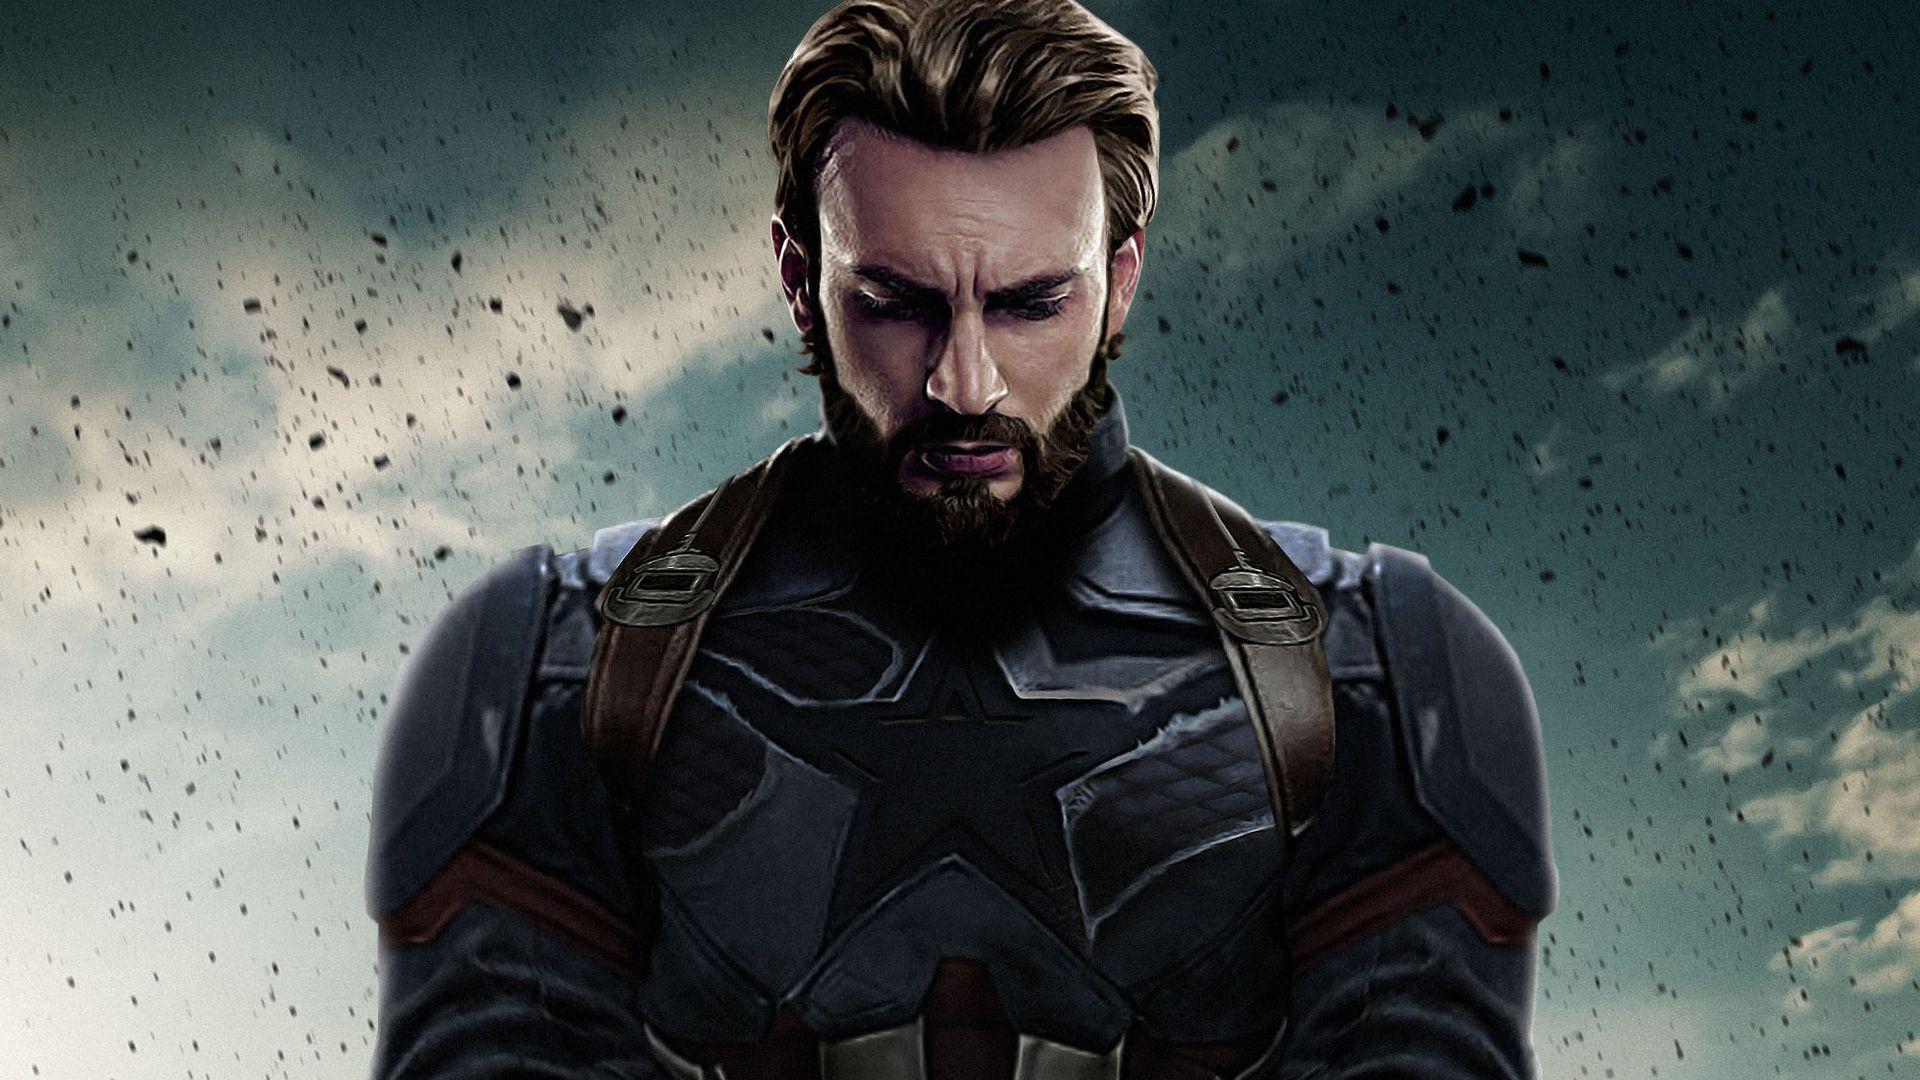 1920x1080 Máy tính xách tay Captain America Avengers Infinity War 2018 Full HD